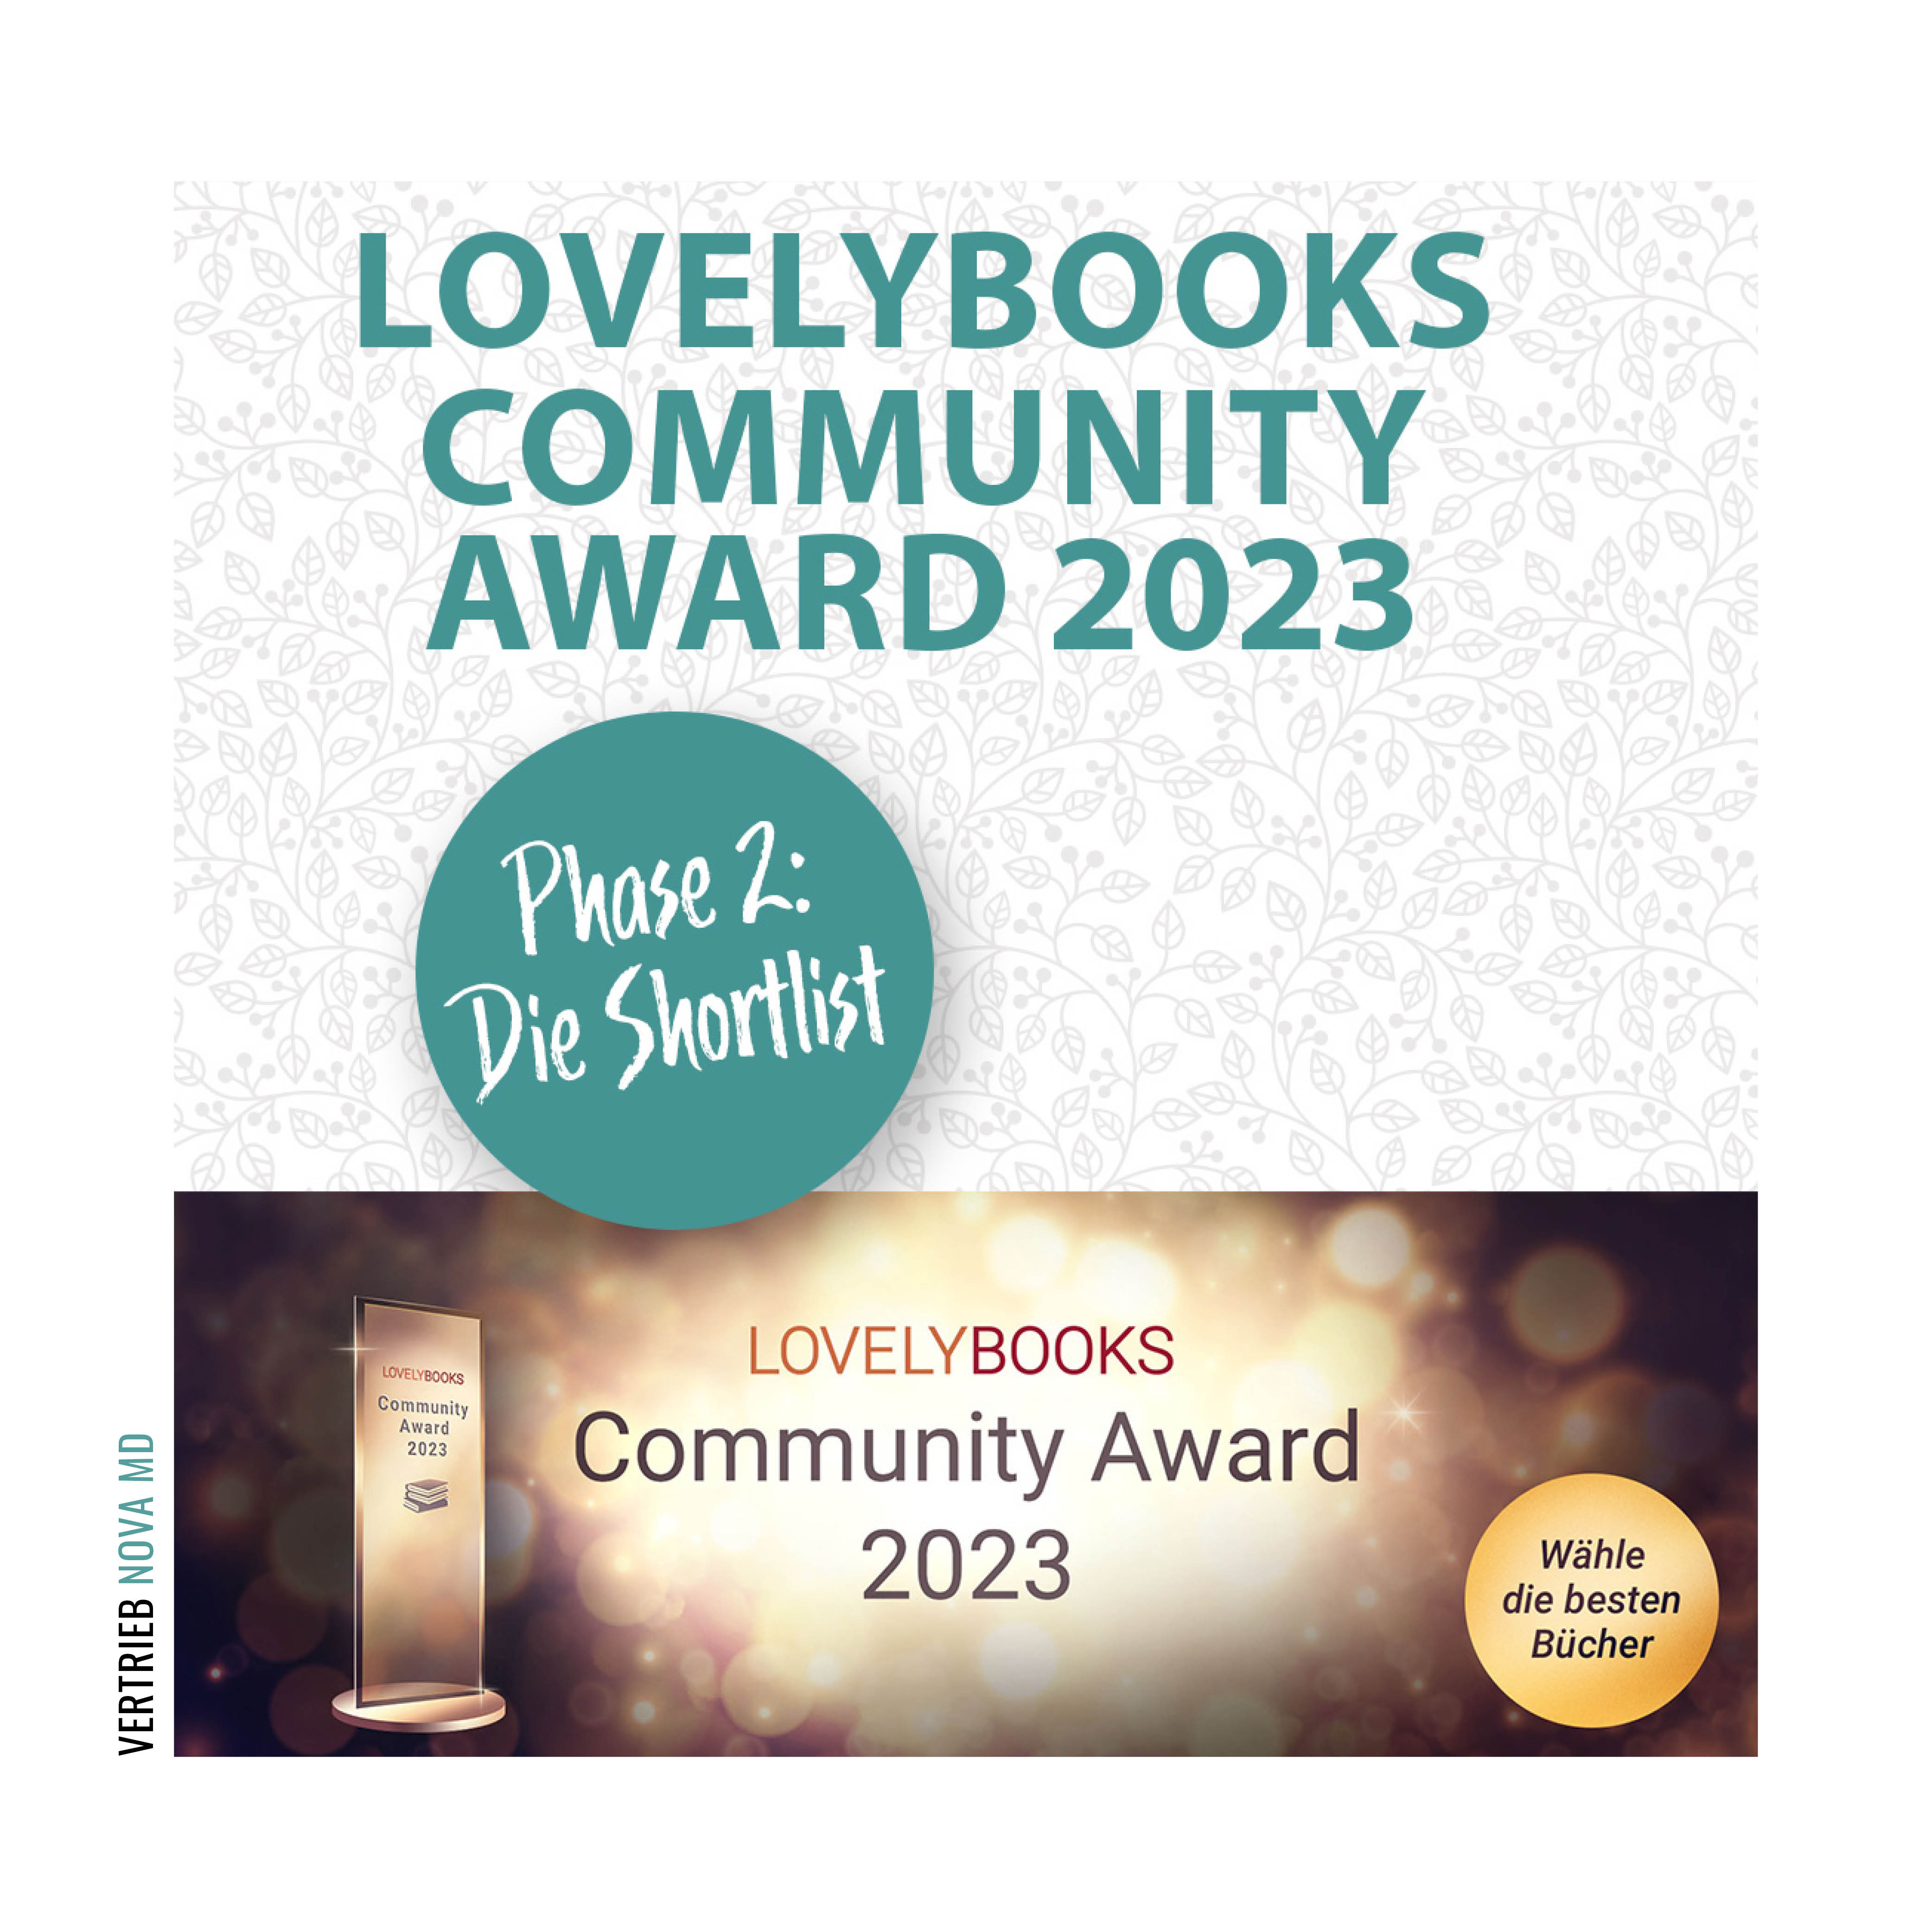 Lovelybooks Community Award Ankündigung der zweiten Phase mit Darstellung des Preises